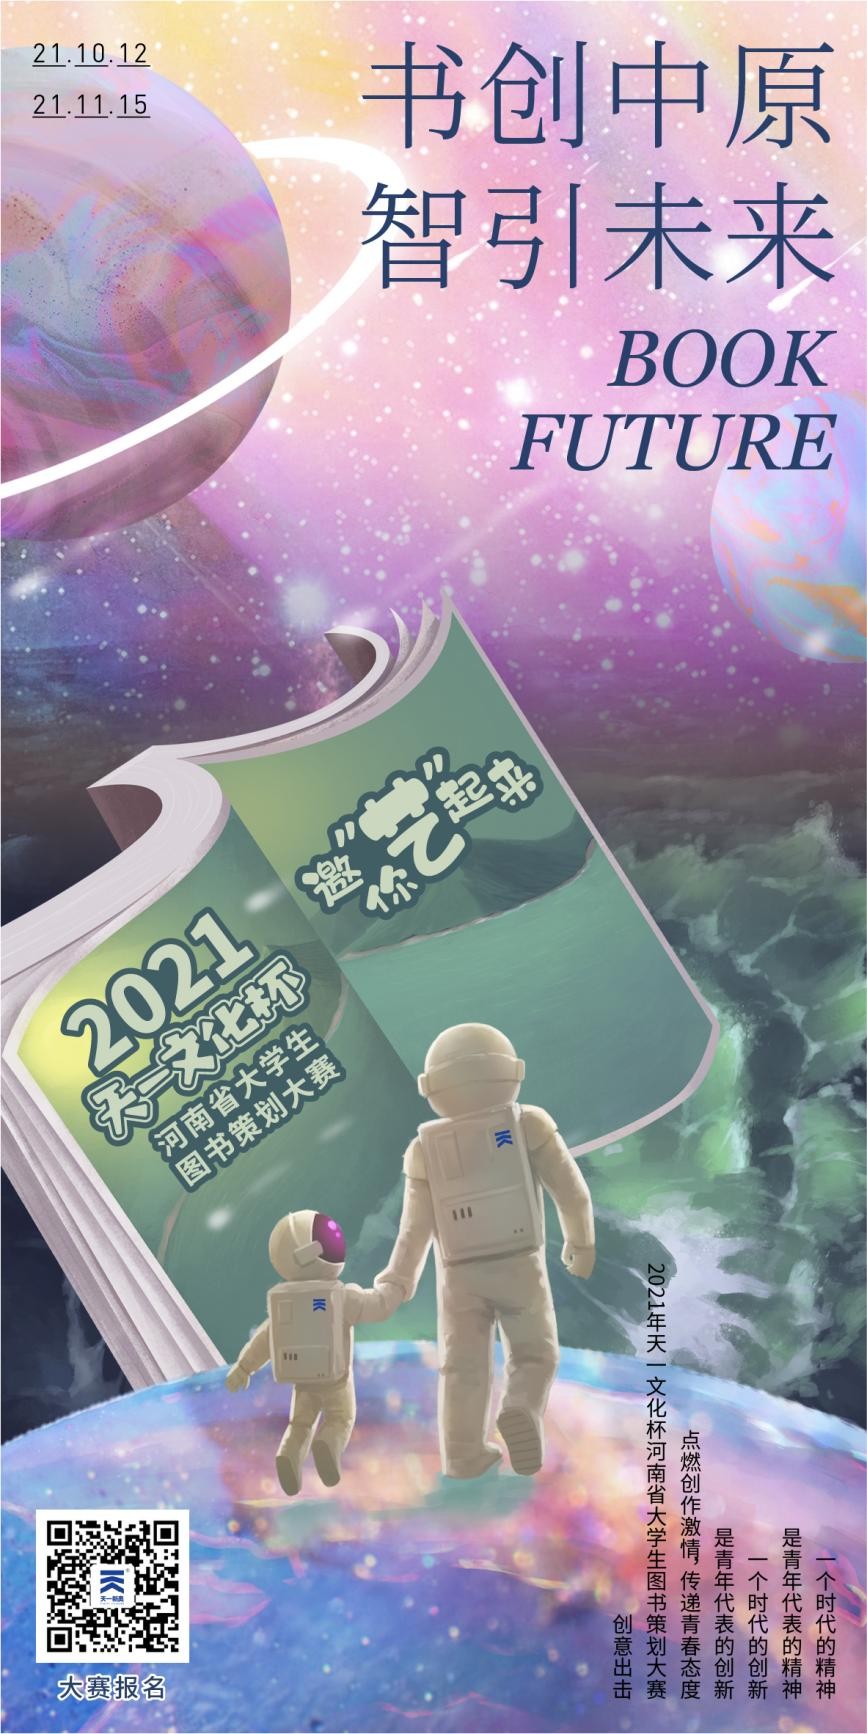 2021年“天一文化杯”河南省大学生图书策划大赛正式启动